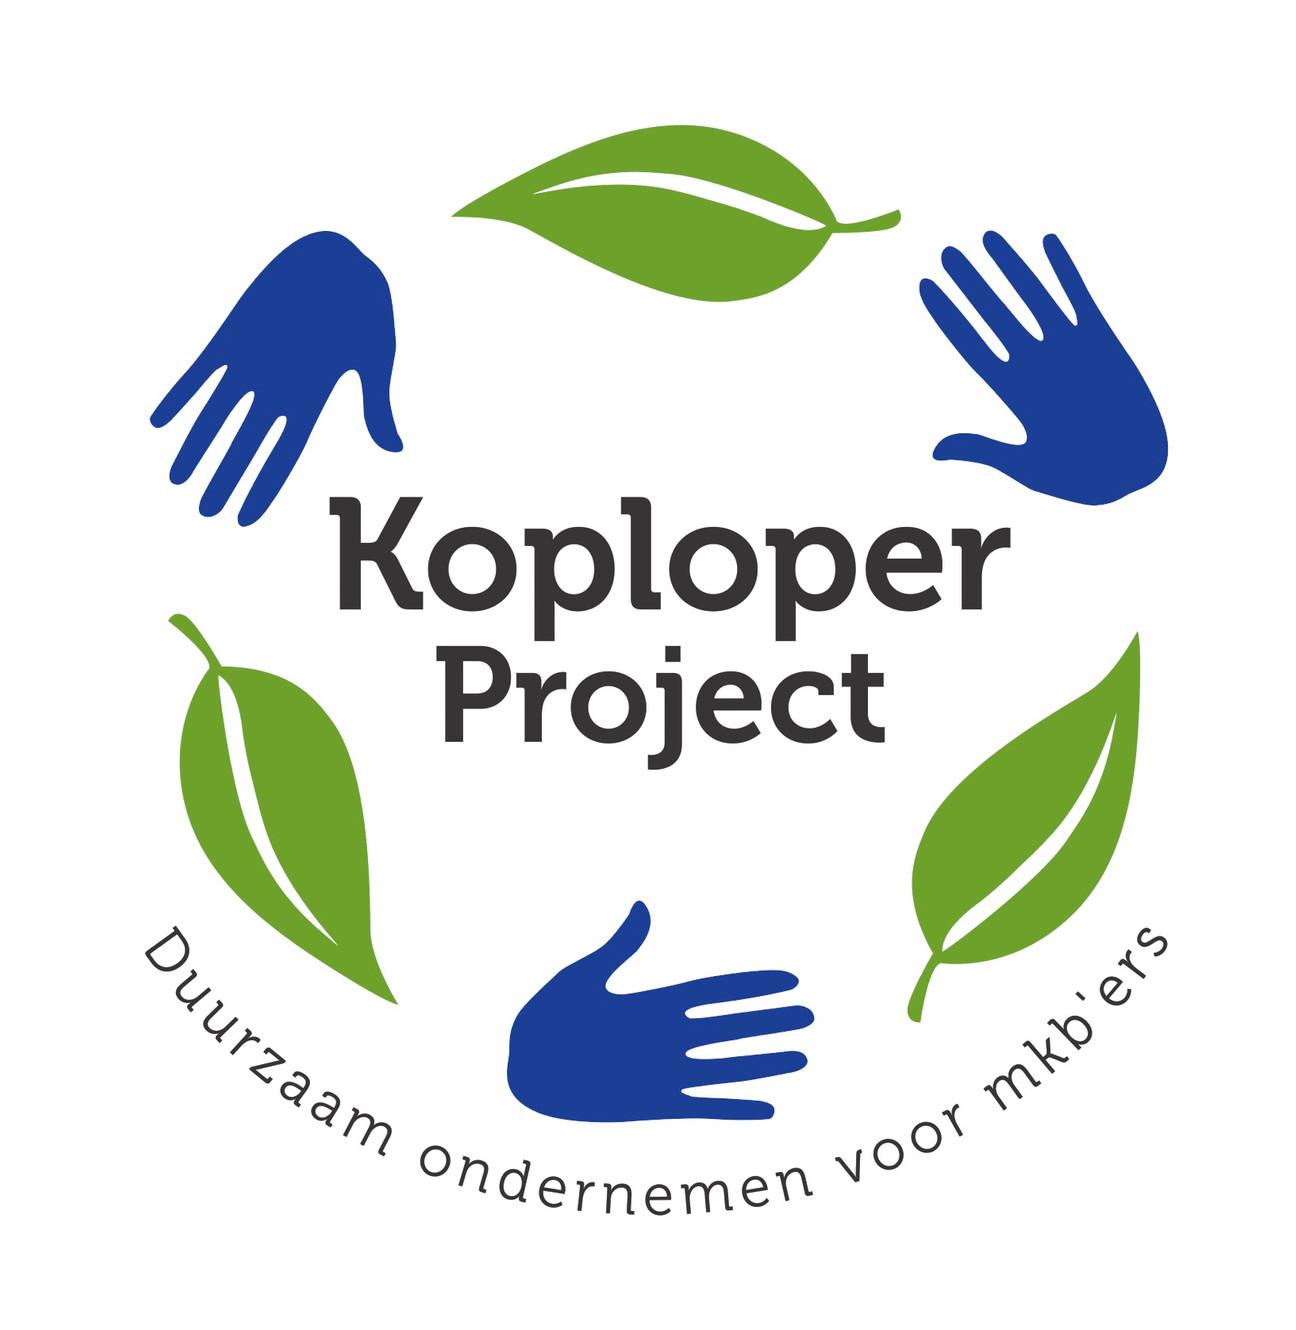 KoploperProject